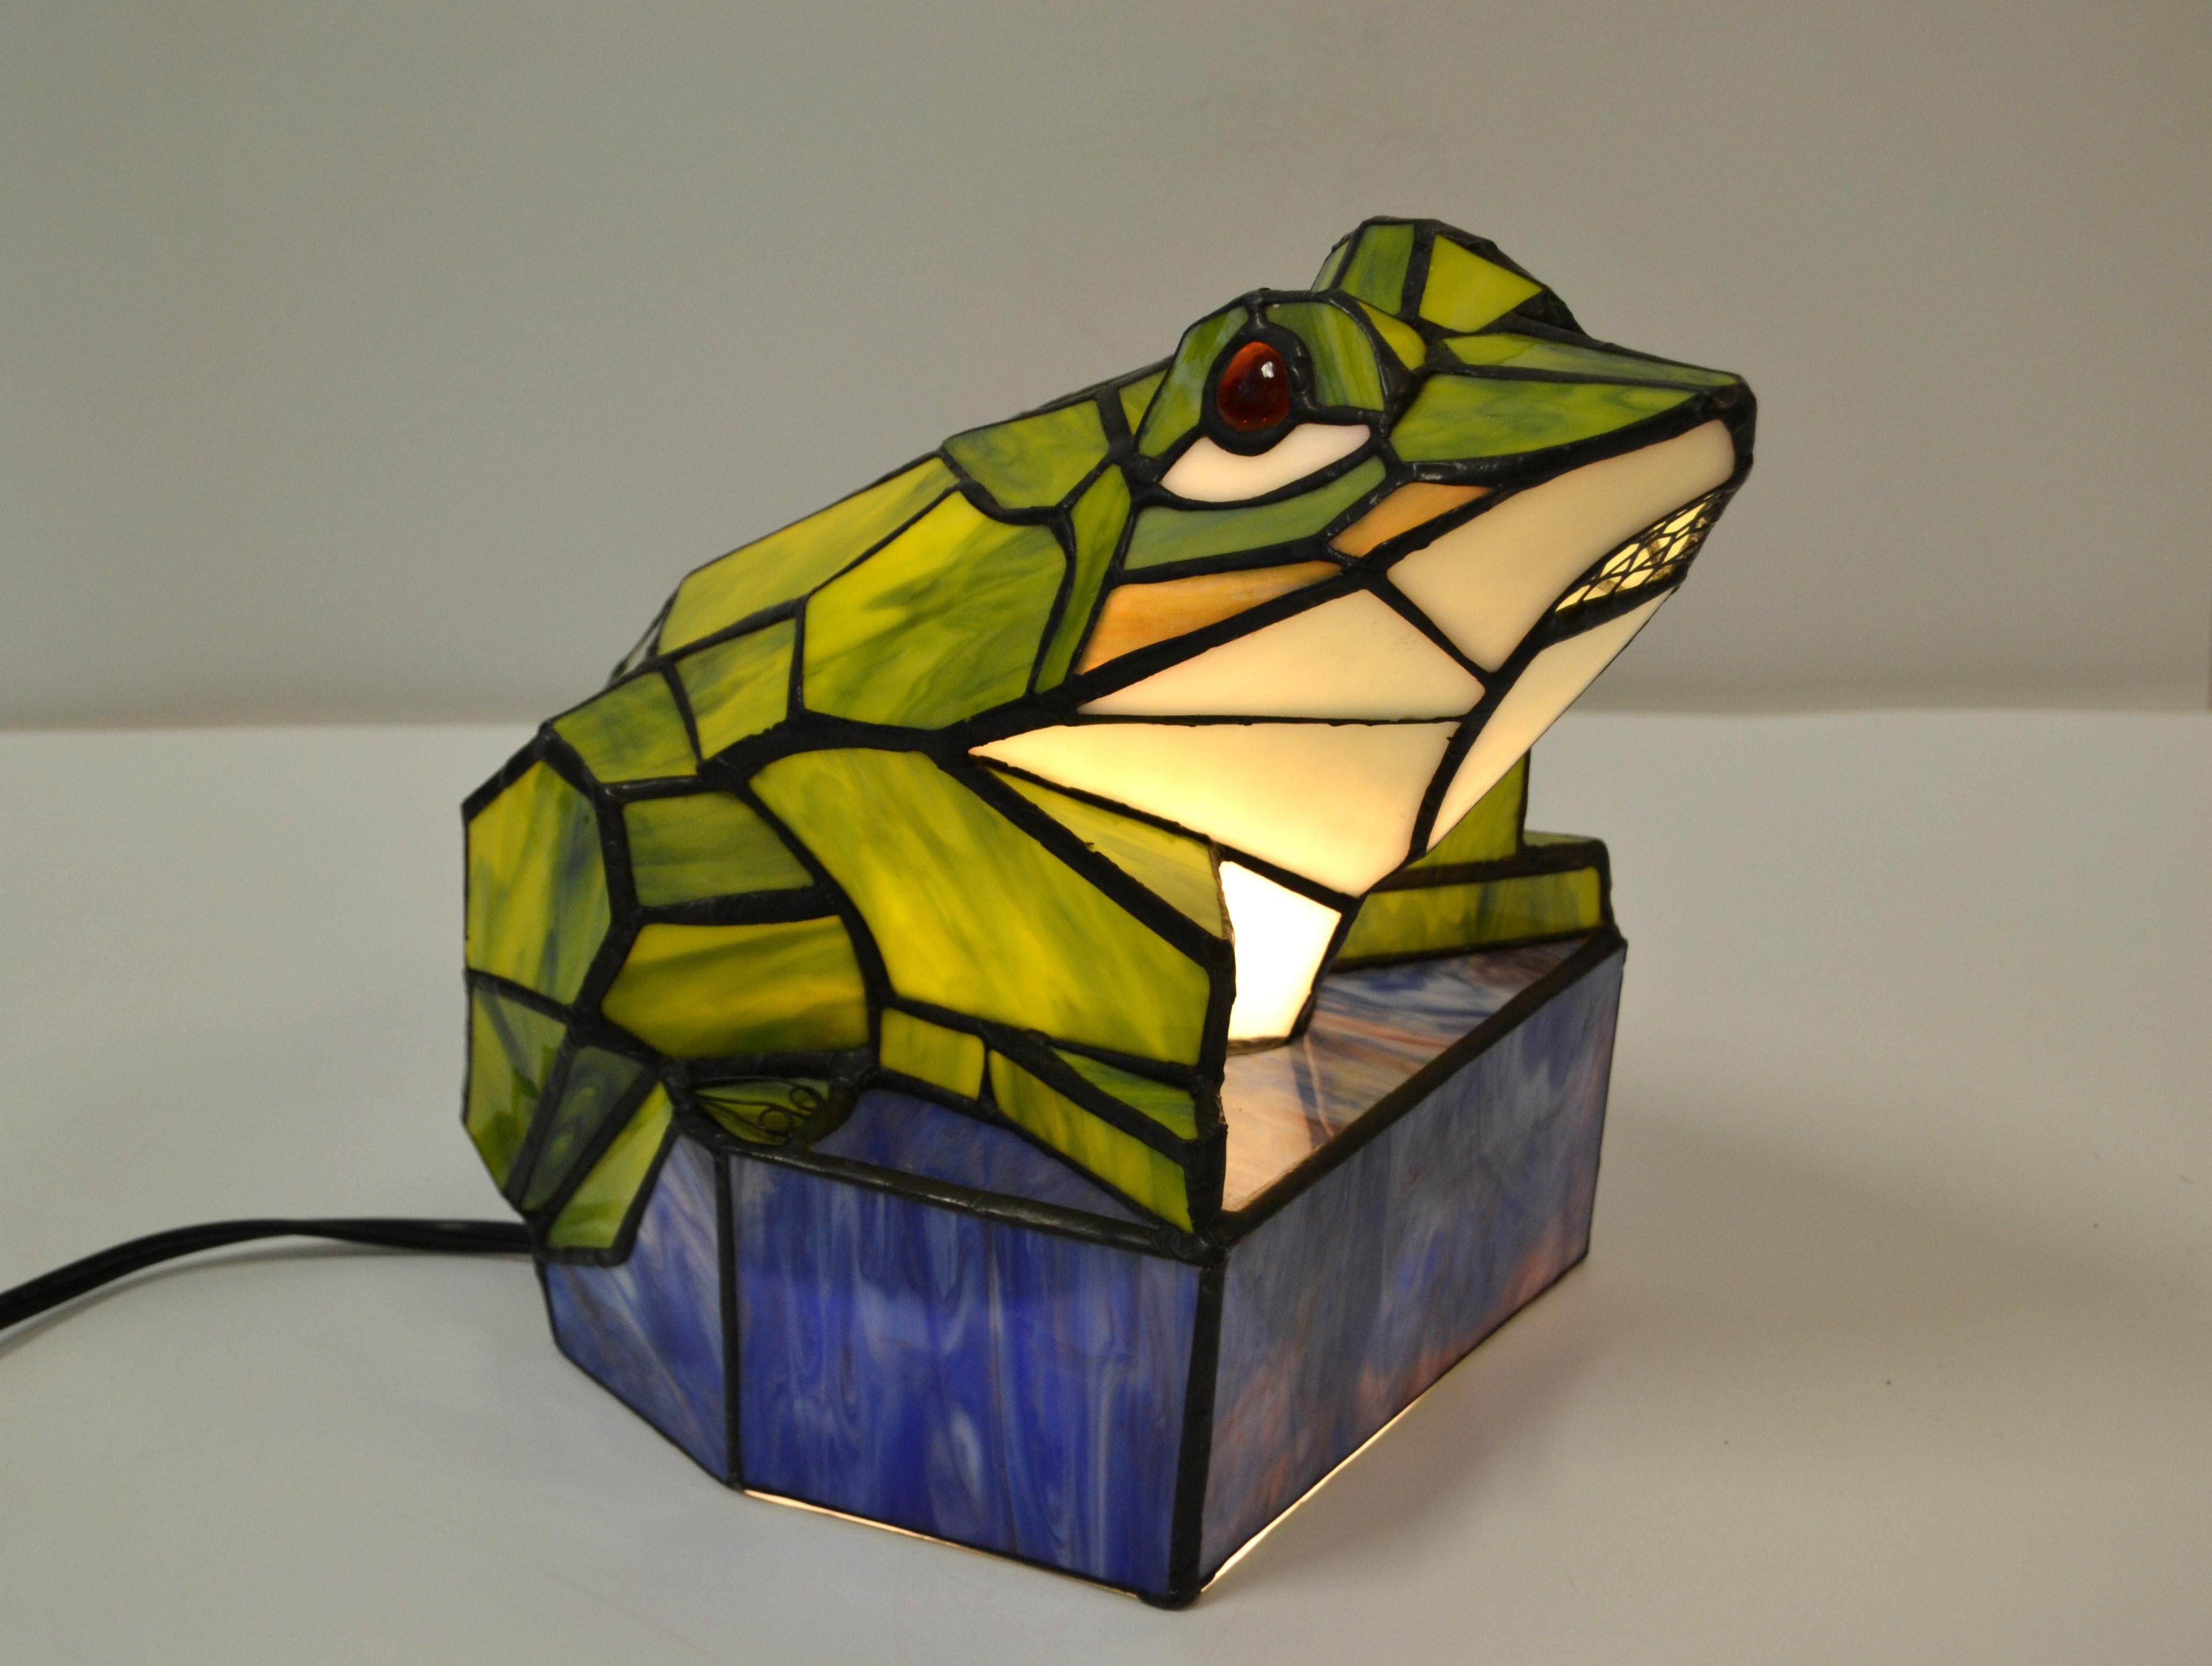 Lampe de table grenouille en verre d'art teinté vert et bleu, lampe sculpture animalière.
Parfait état de fonctionnement du câblage américain et prend une ampoule de max. 40 watts. 40 watts.
Cette lampe apporte de la joie dans chaque chambre